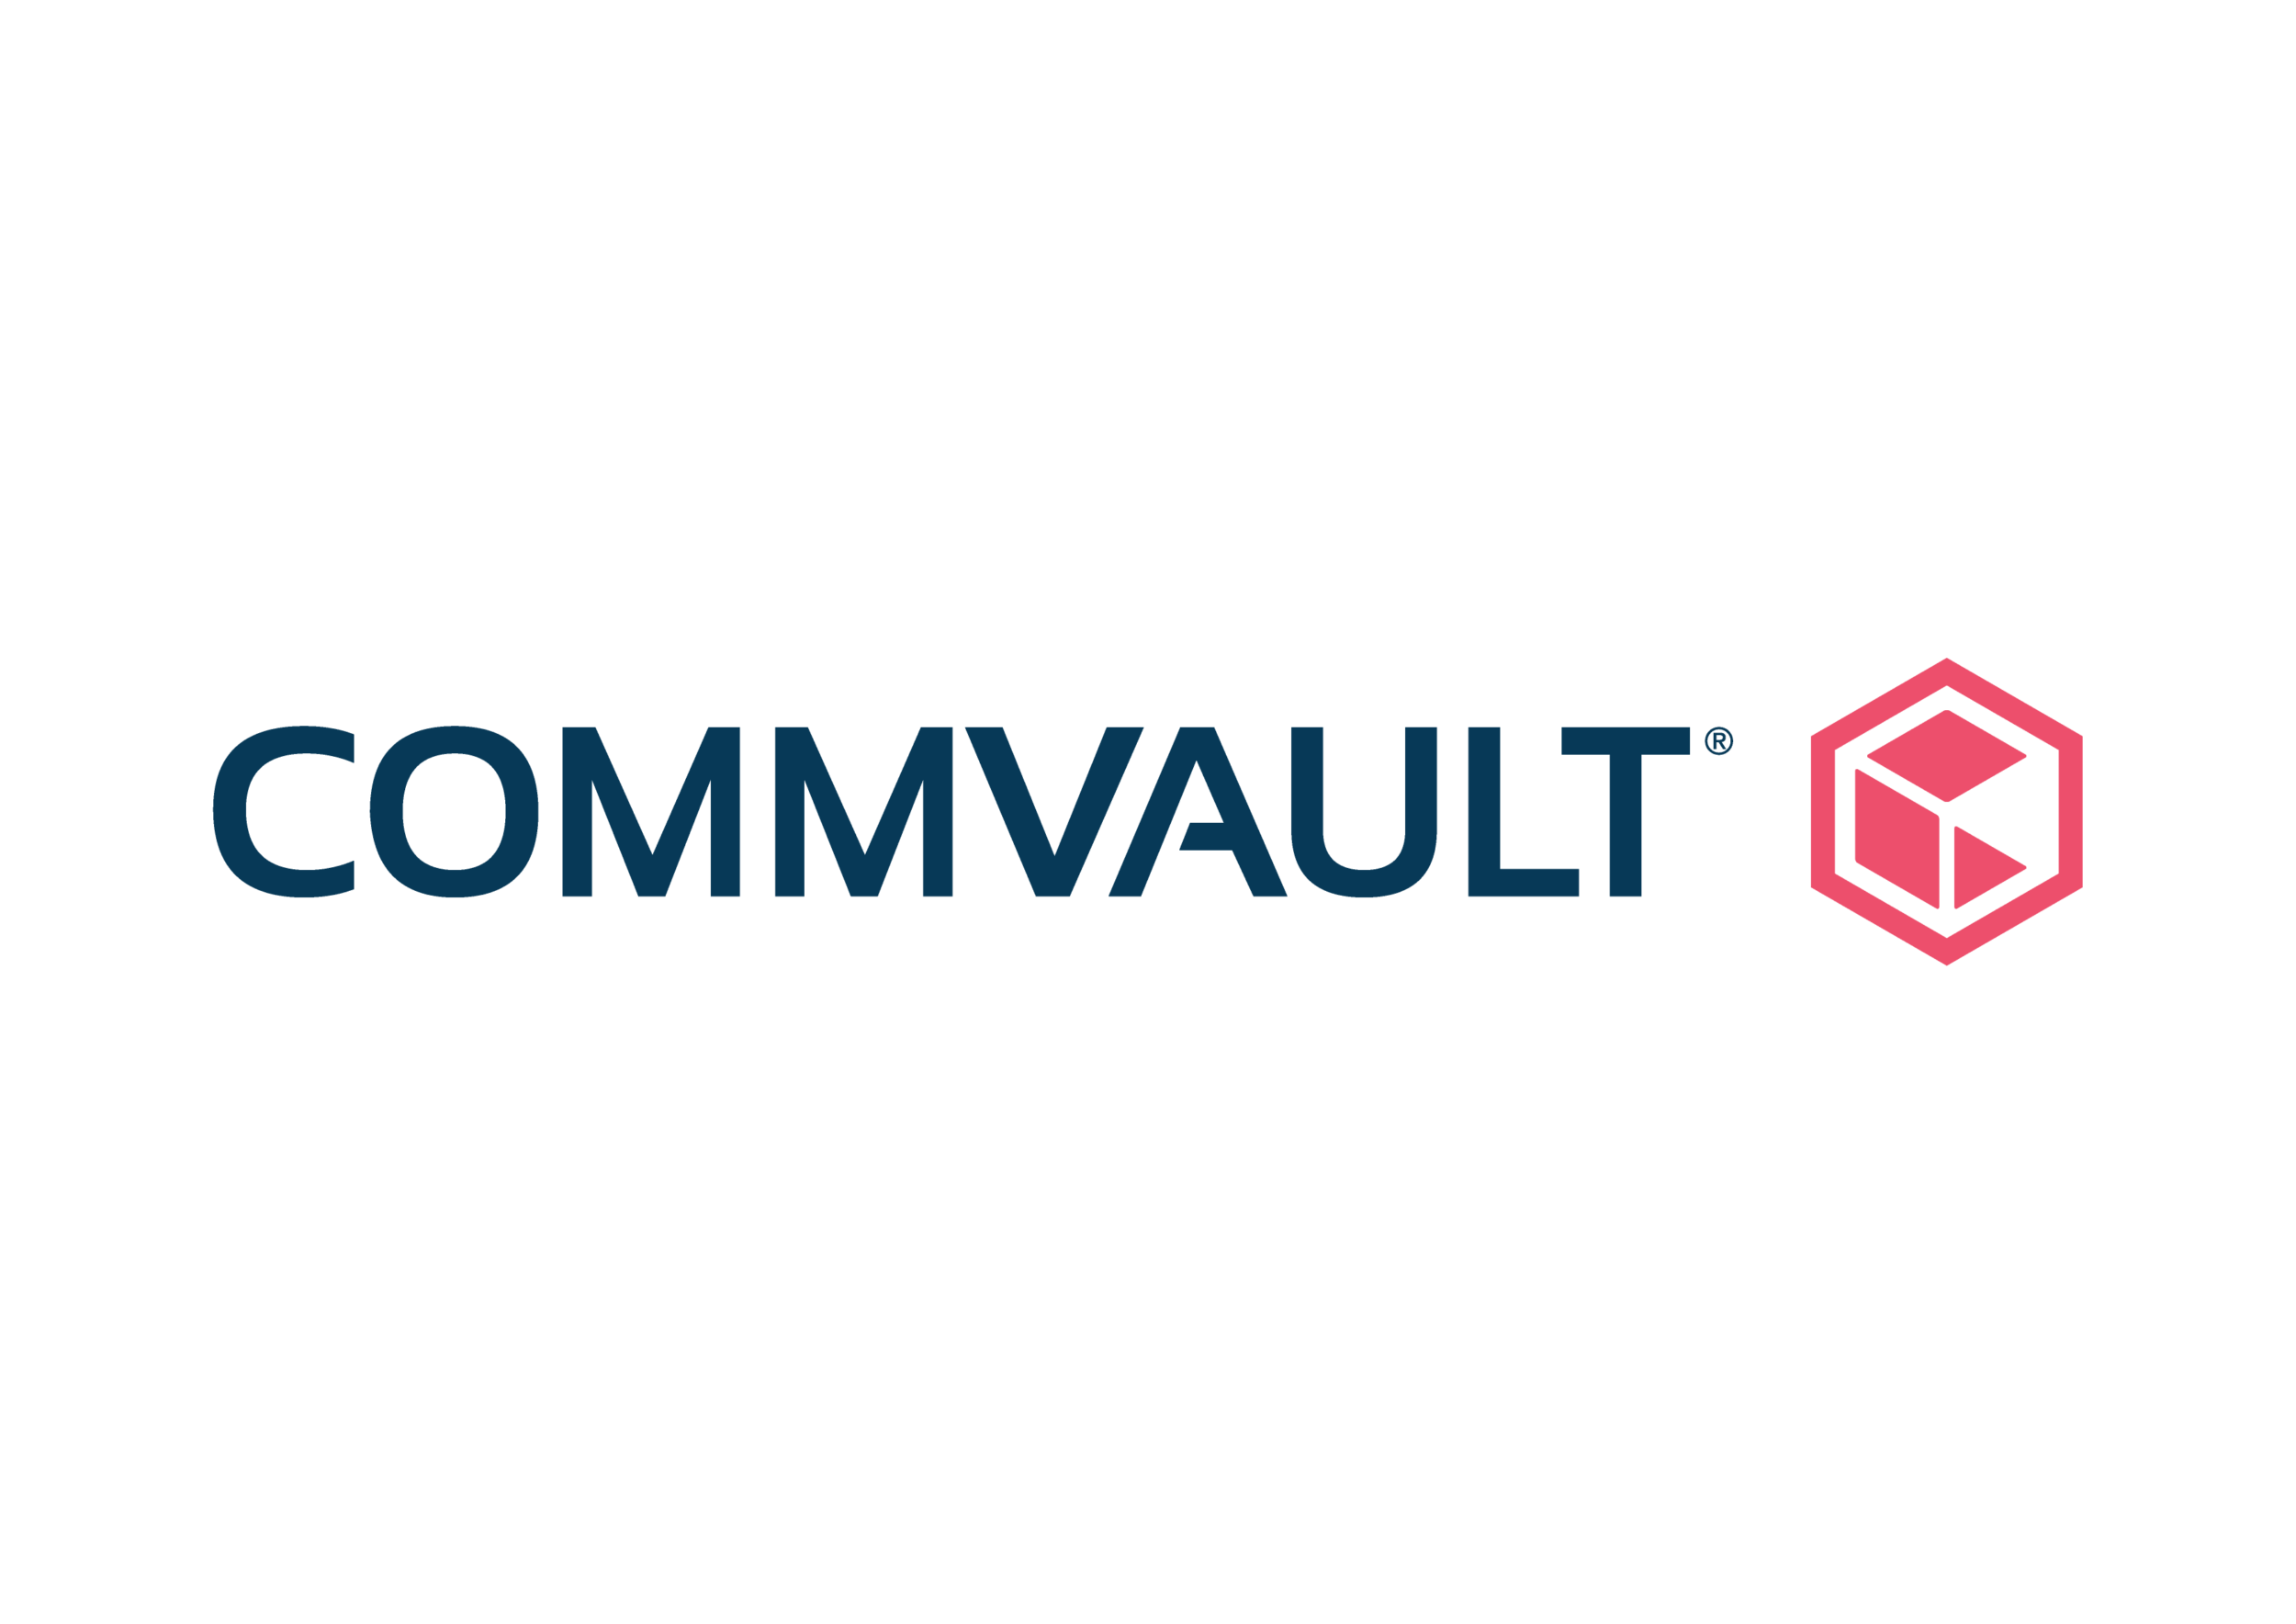 Commvault intelligent data services